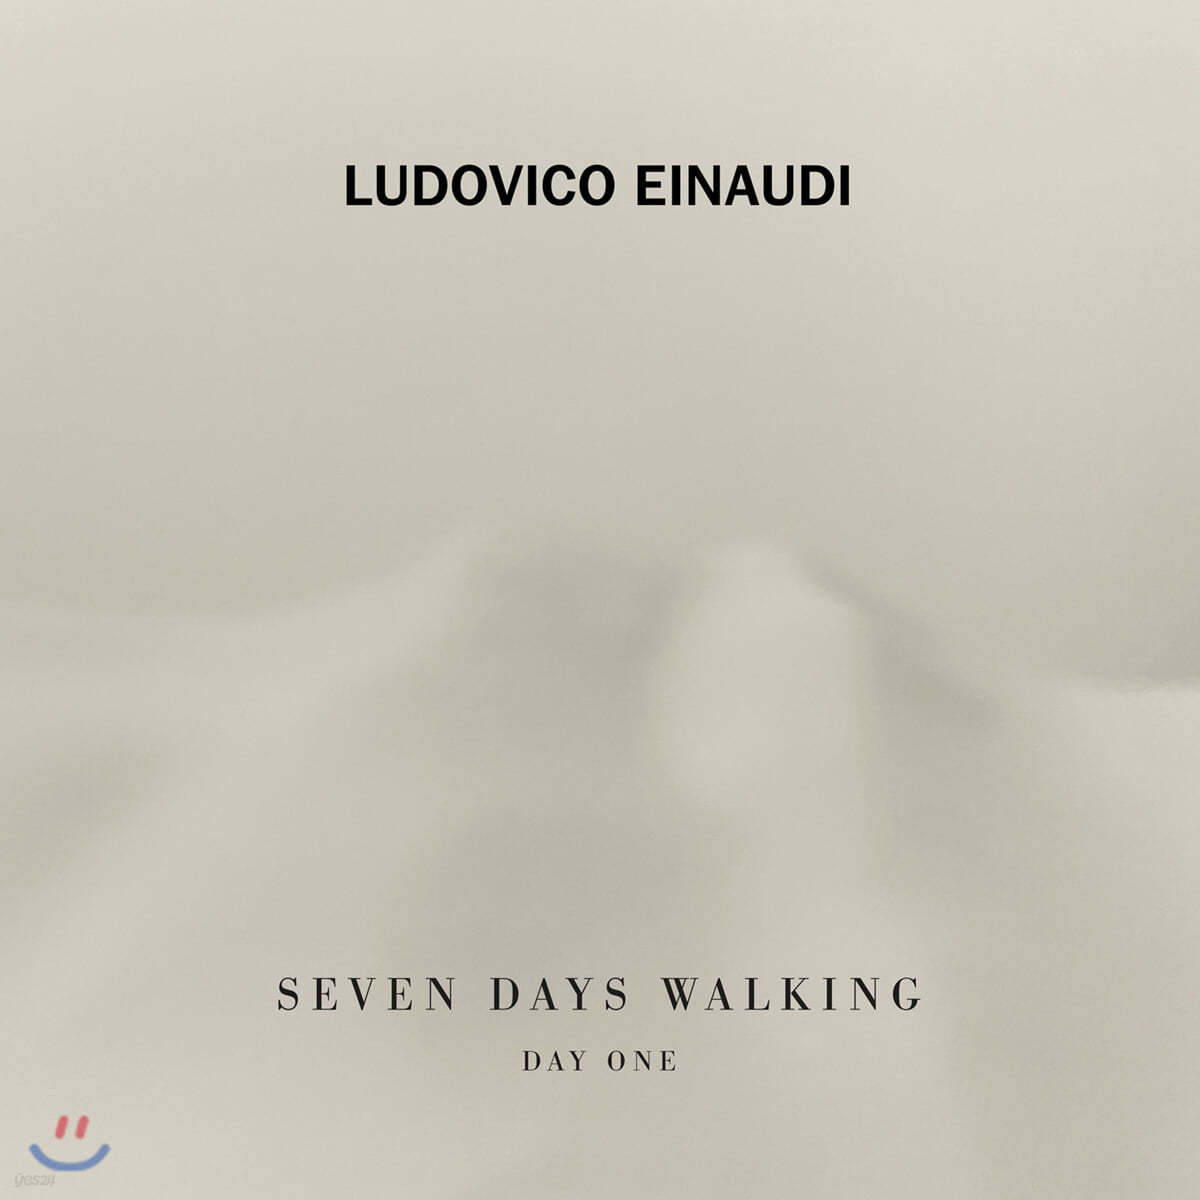 루도비코 에이나우디 - 7일 간의 산책, 첫 번째 날 (Ludovico Einaudi - Seven Days Walking, Day 1) [LP]